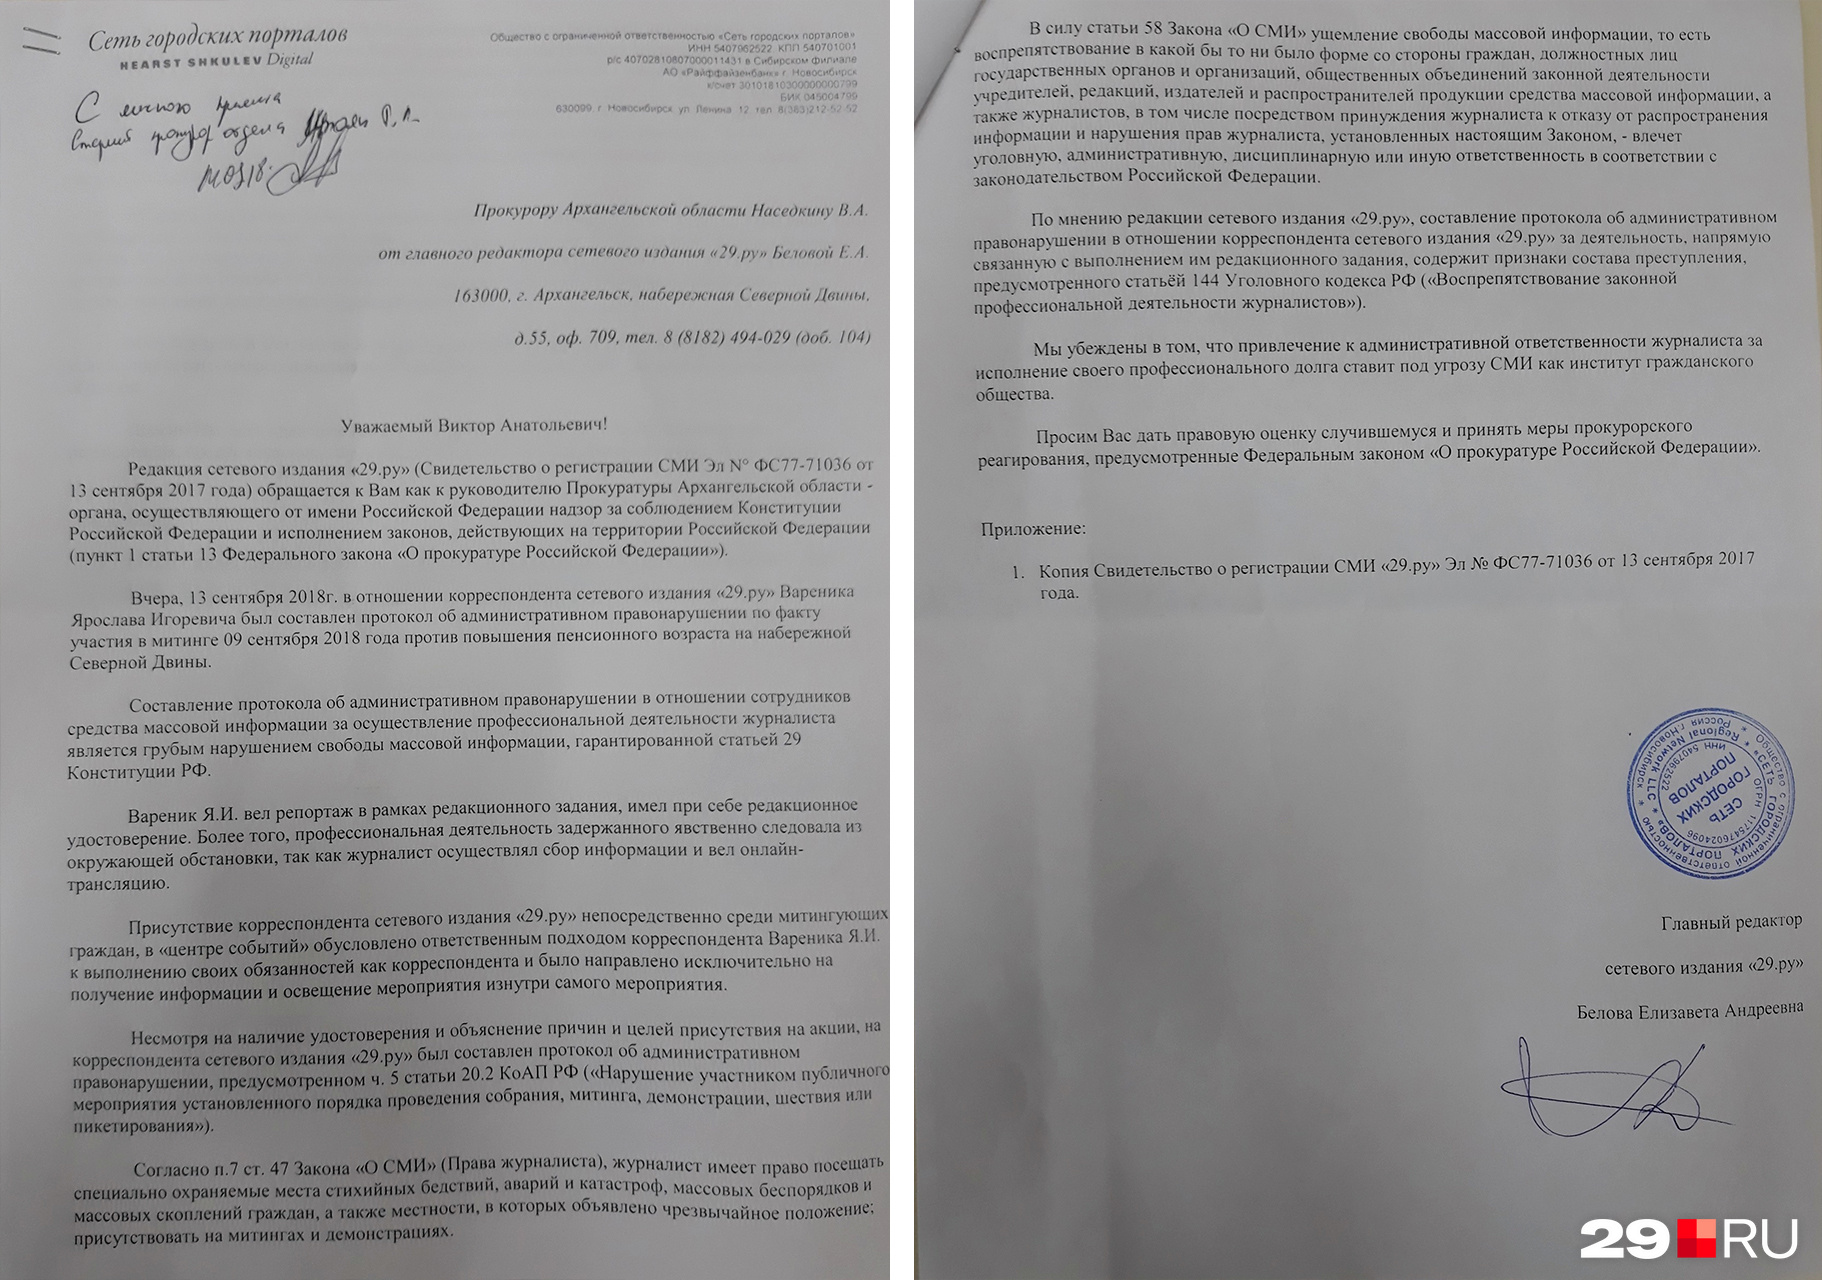 Заявление, которое редакция 29.ru отнесла в прокуратуру 